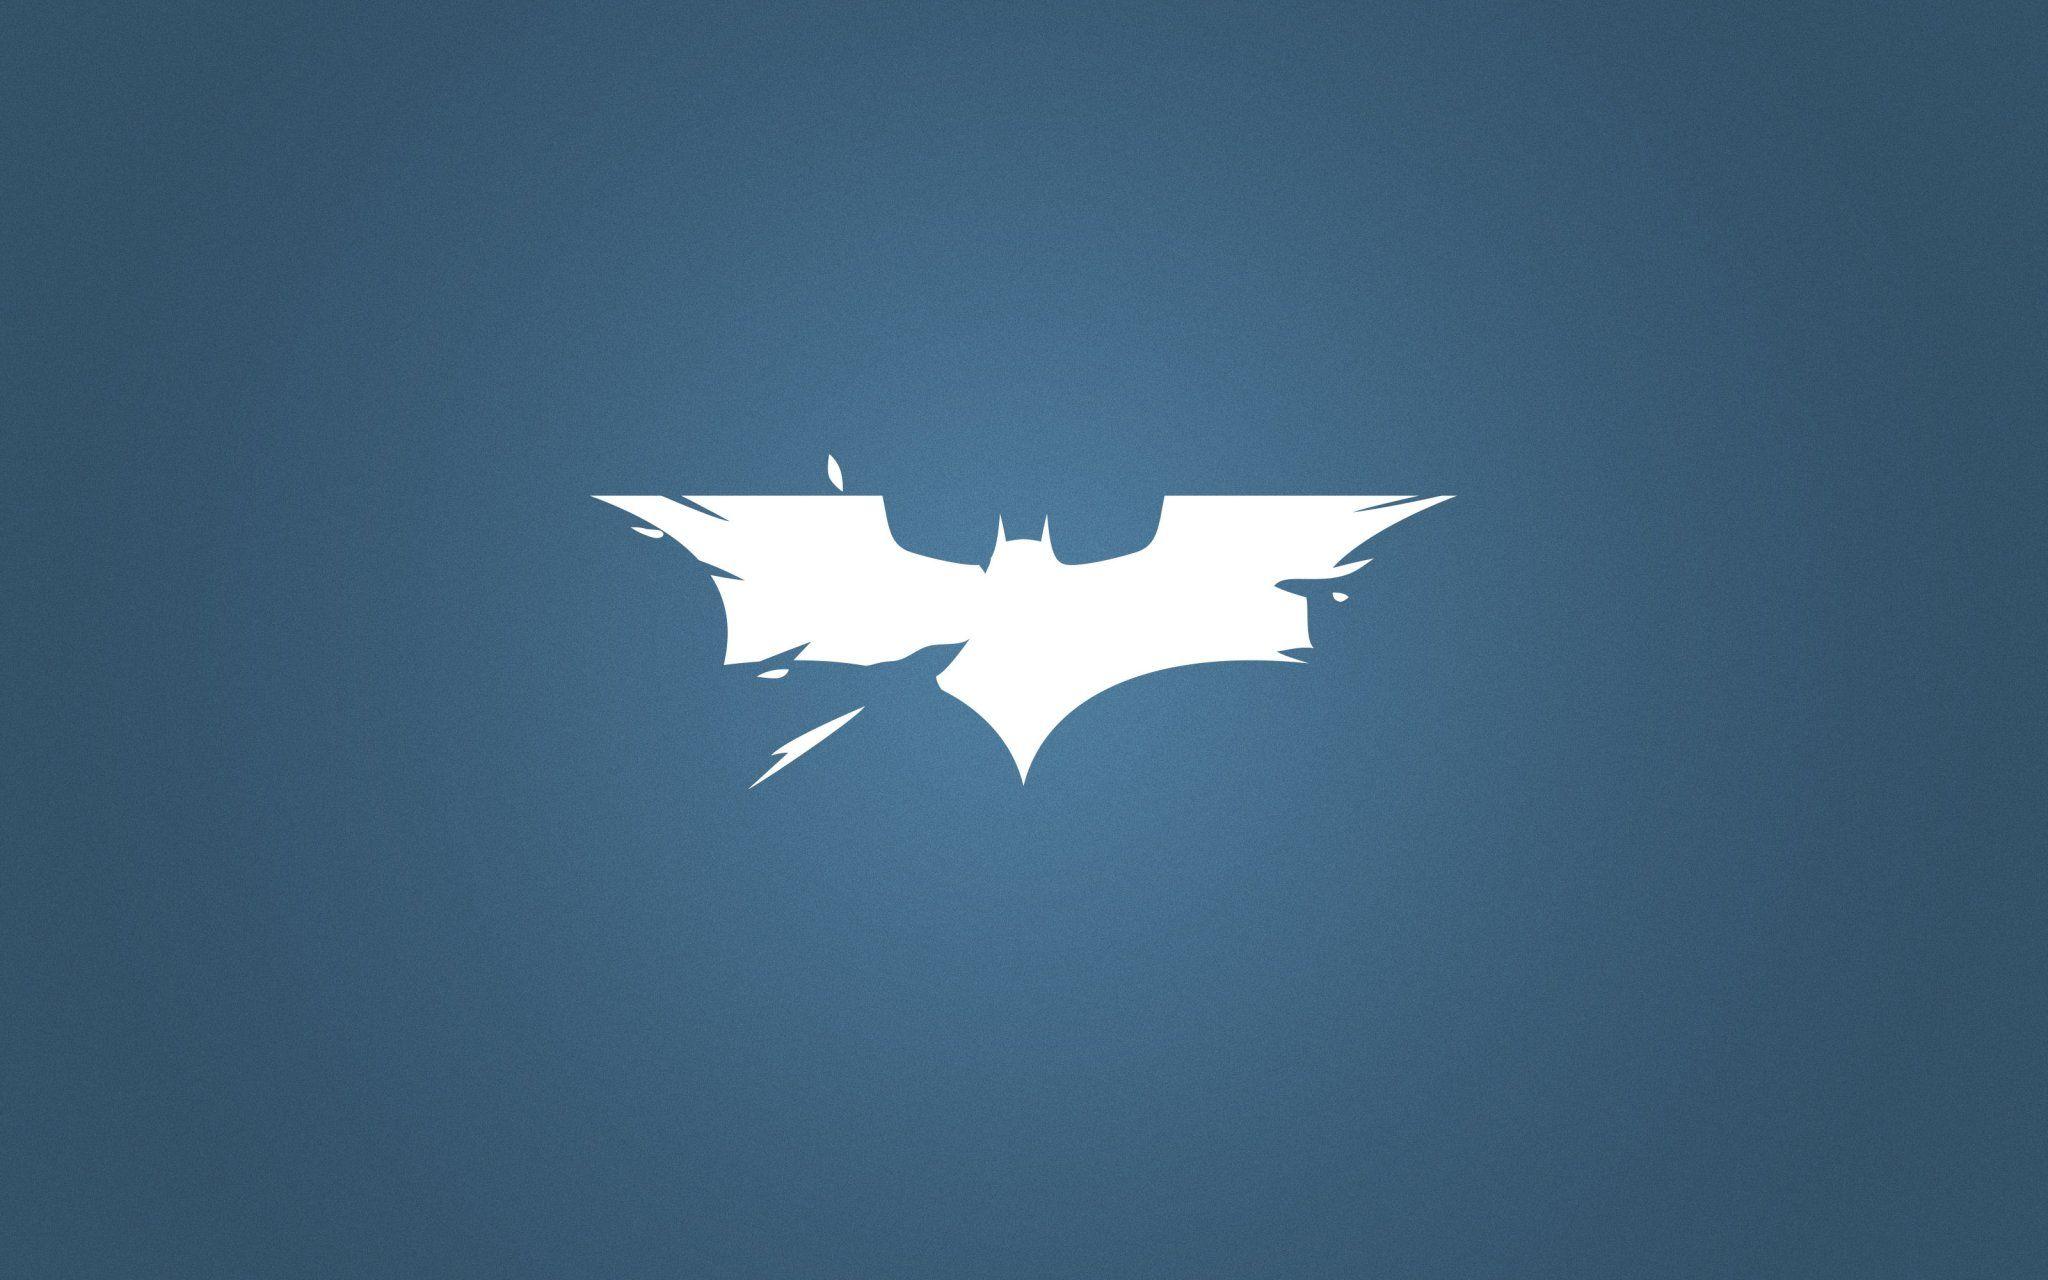 Batman Logo Wallpaper Mobile Is 4K Wallpaperk wallpaper for mobile, Minimalist wallpaper, Wallpaper